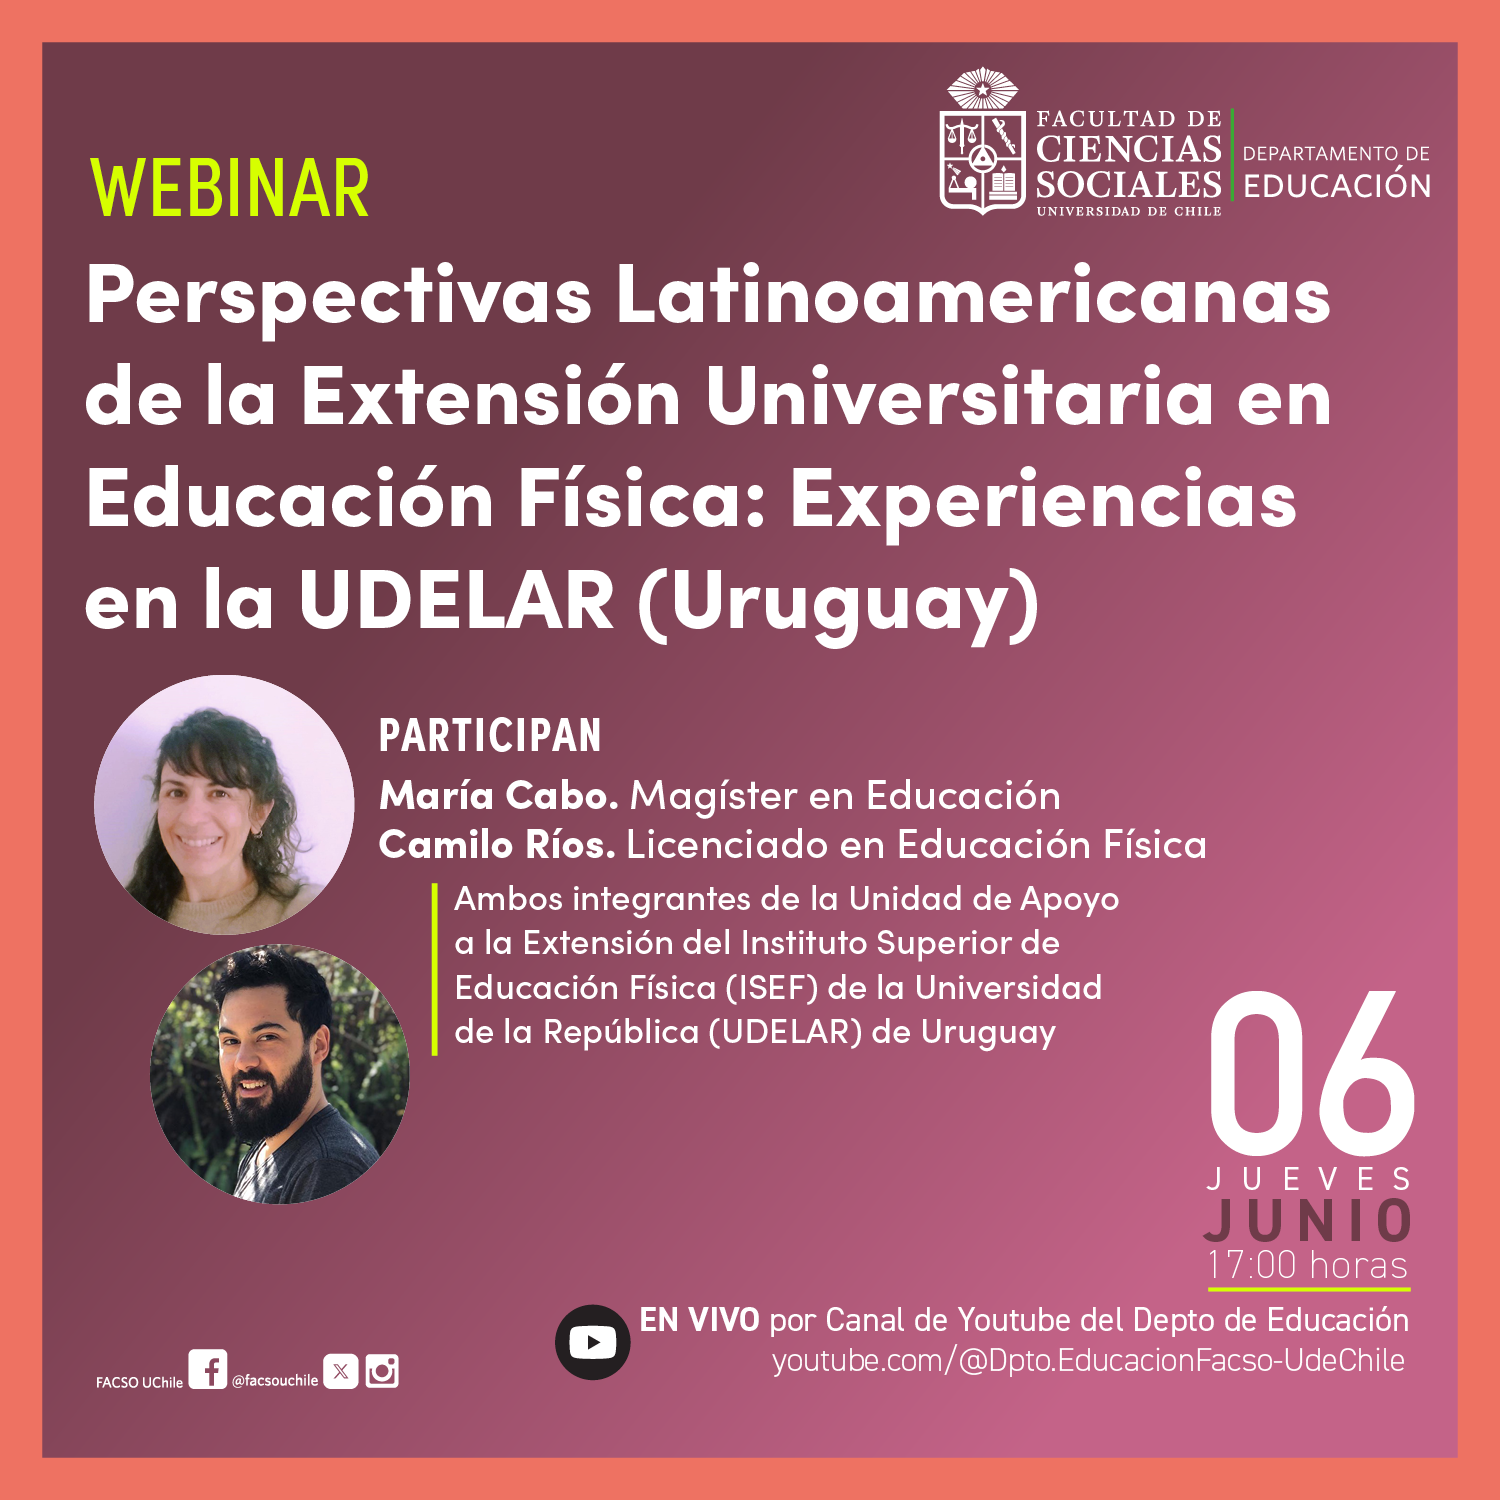 Webinar “Perspectivas Latinoamericanas de la Extensión Universitaria en Educación Física: Experiencias en la UDELAR (Uruguay)”.